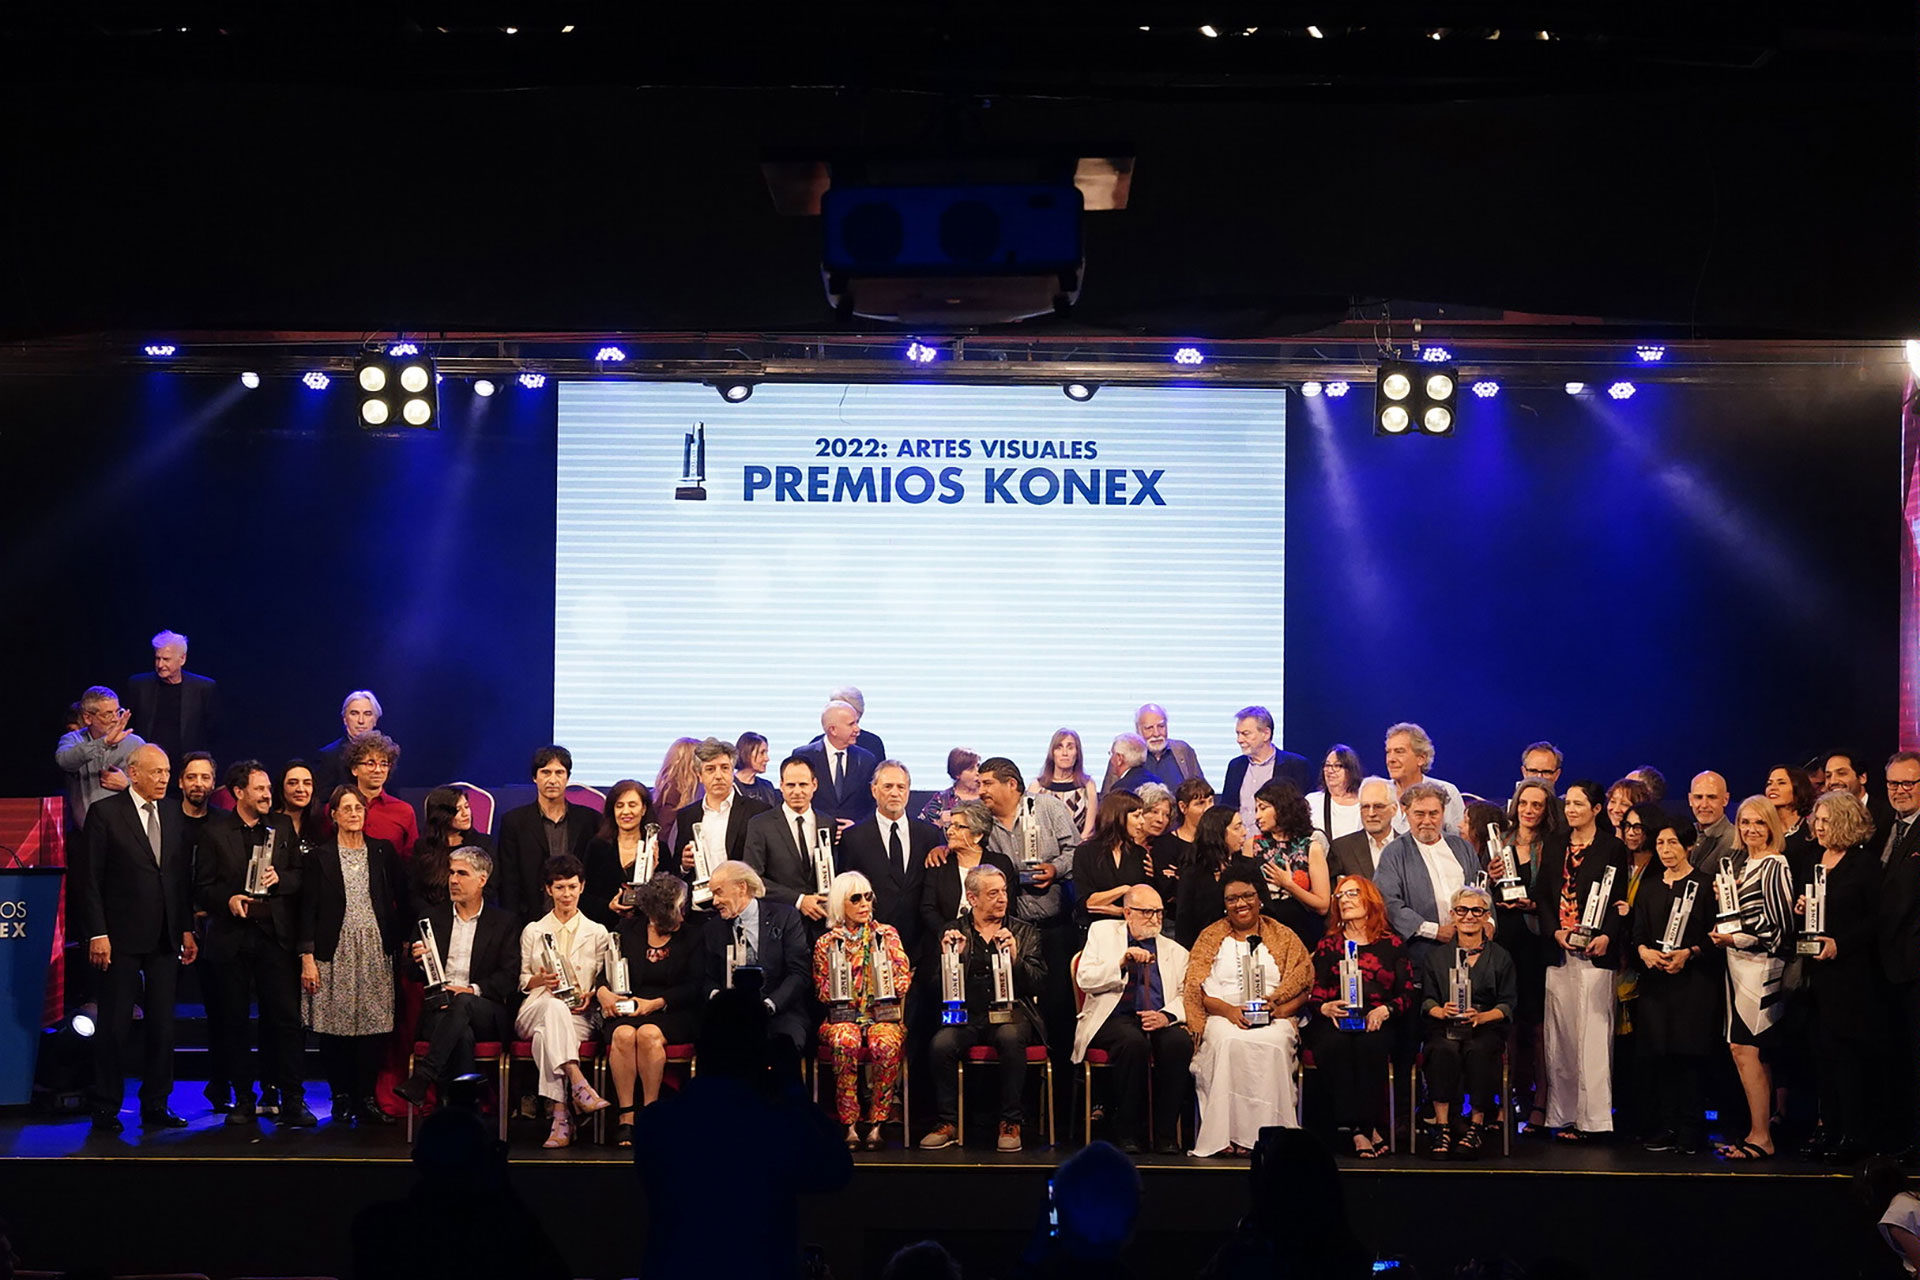 Momento culminante de la noche de los Konex, con todos los premiados sobre el escenario (Foto: Franco Fafasuli)